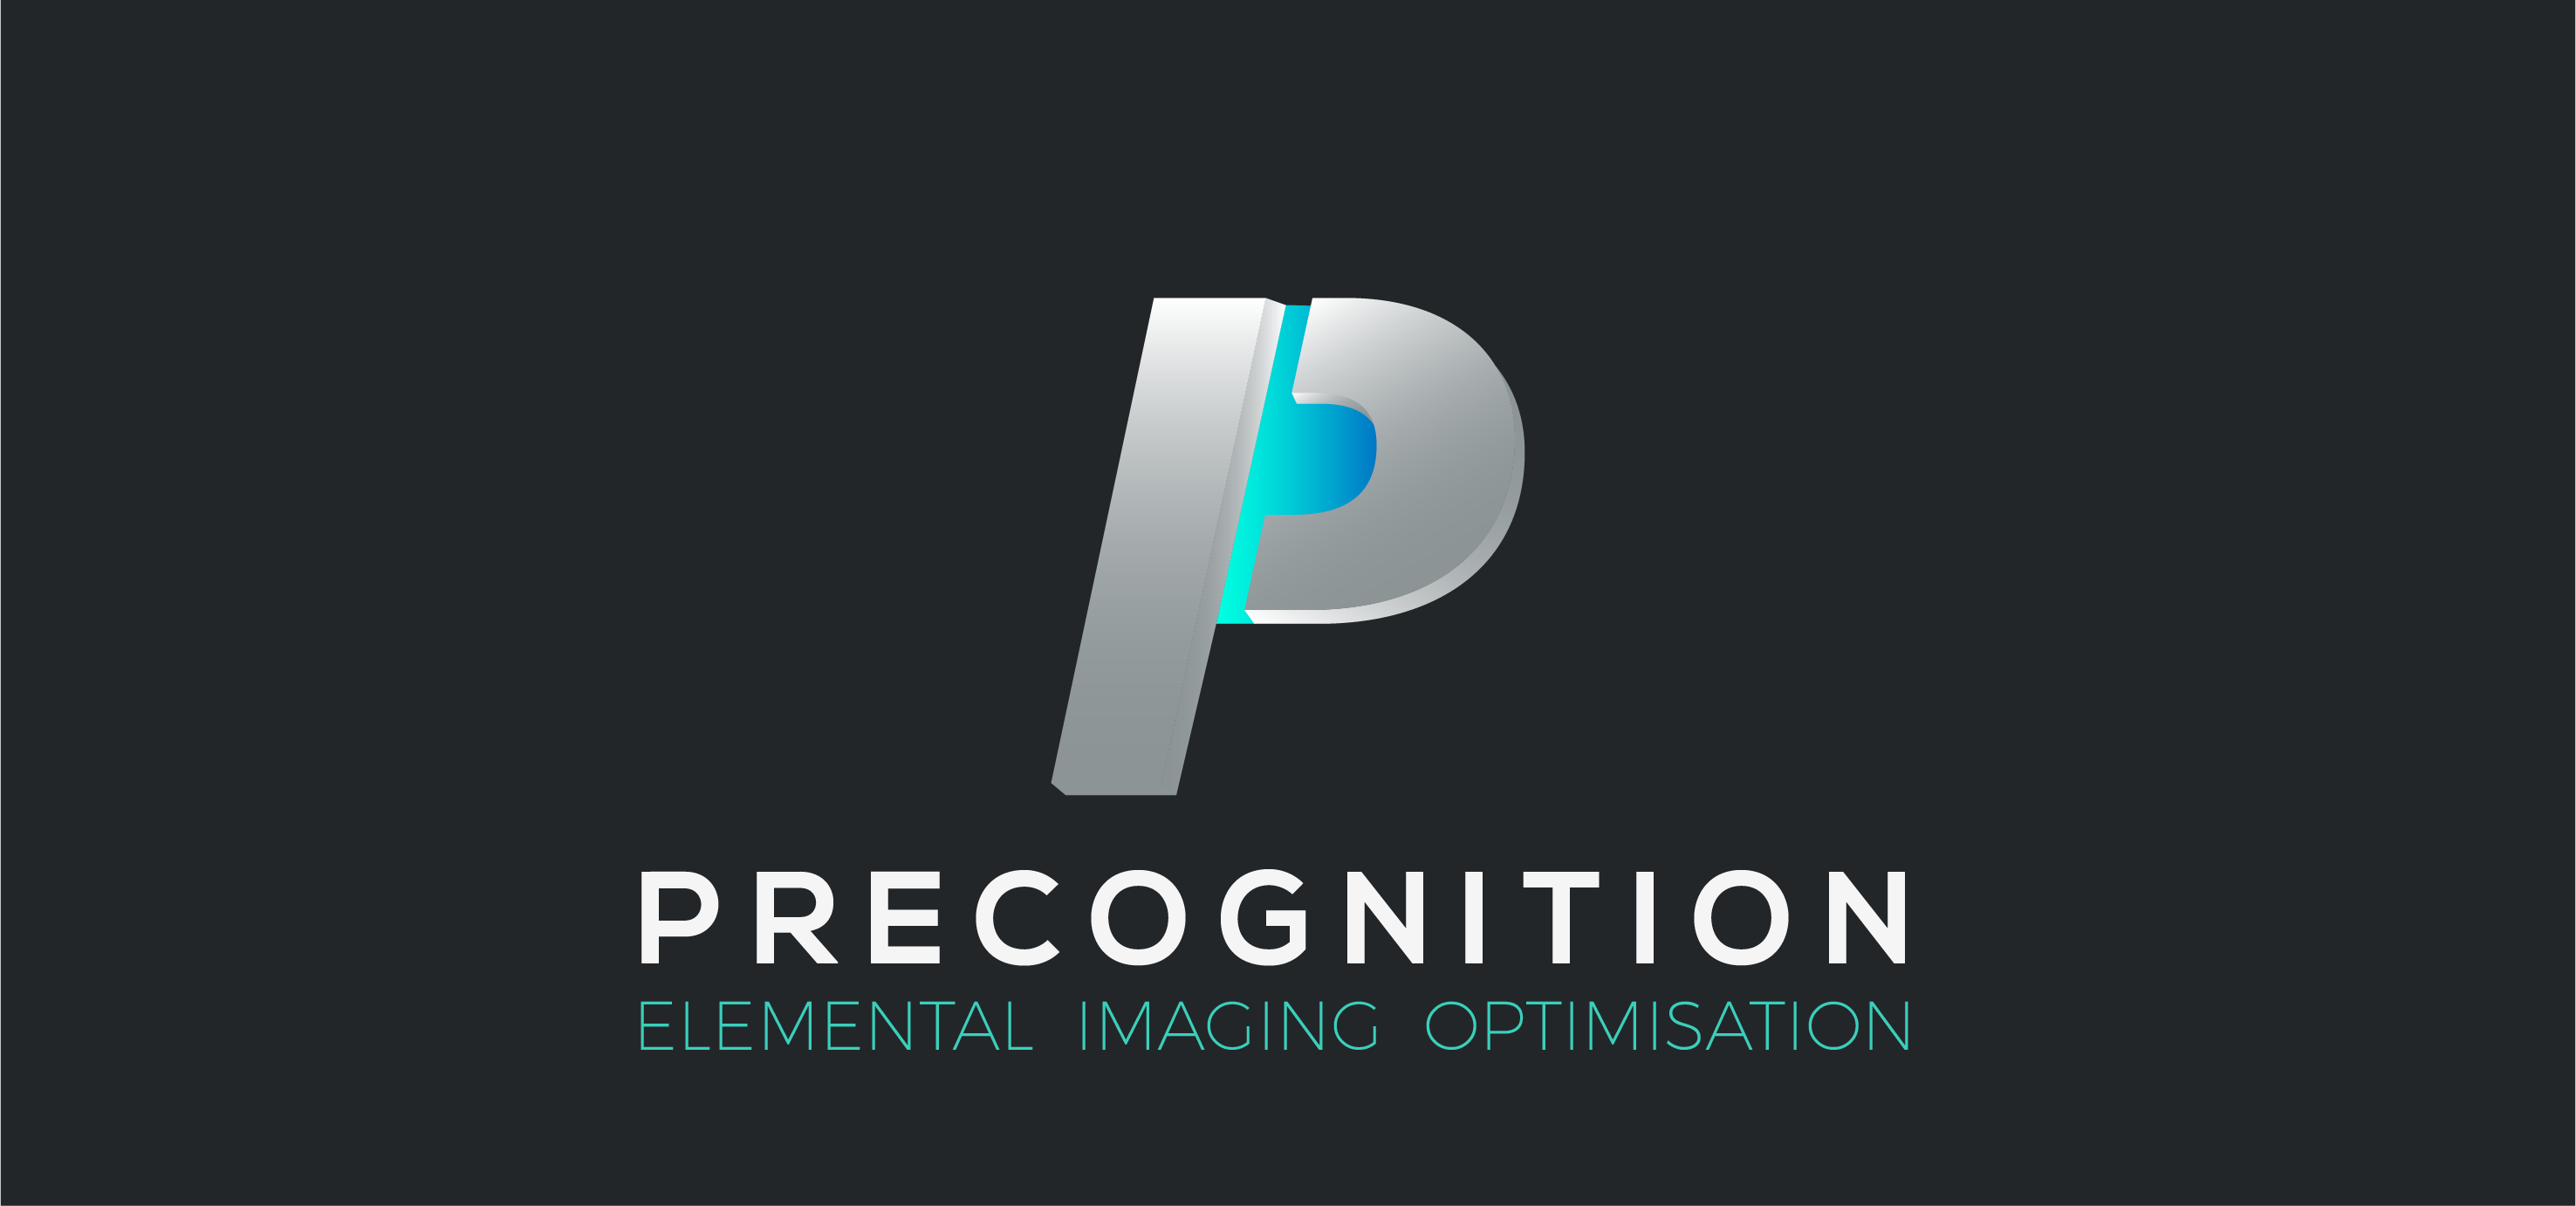 Precognition logo